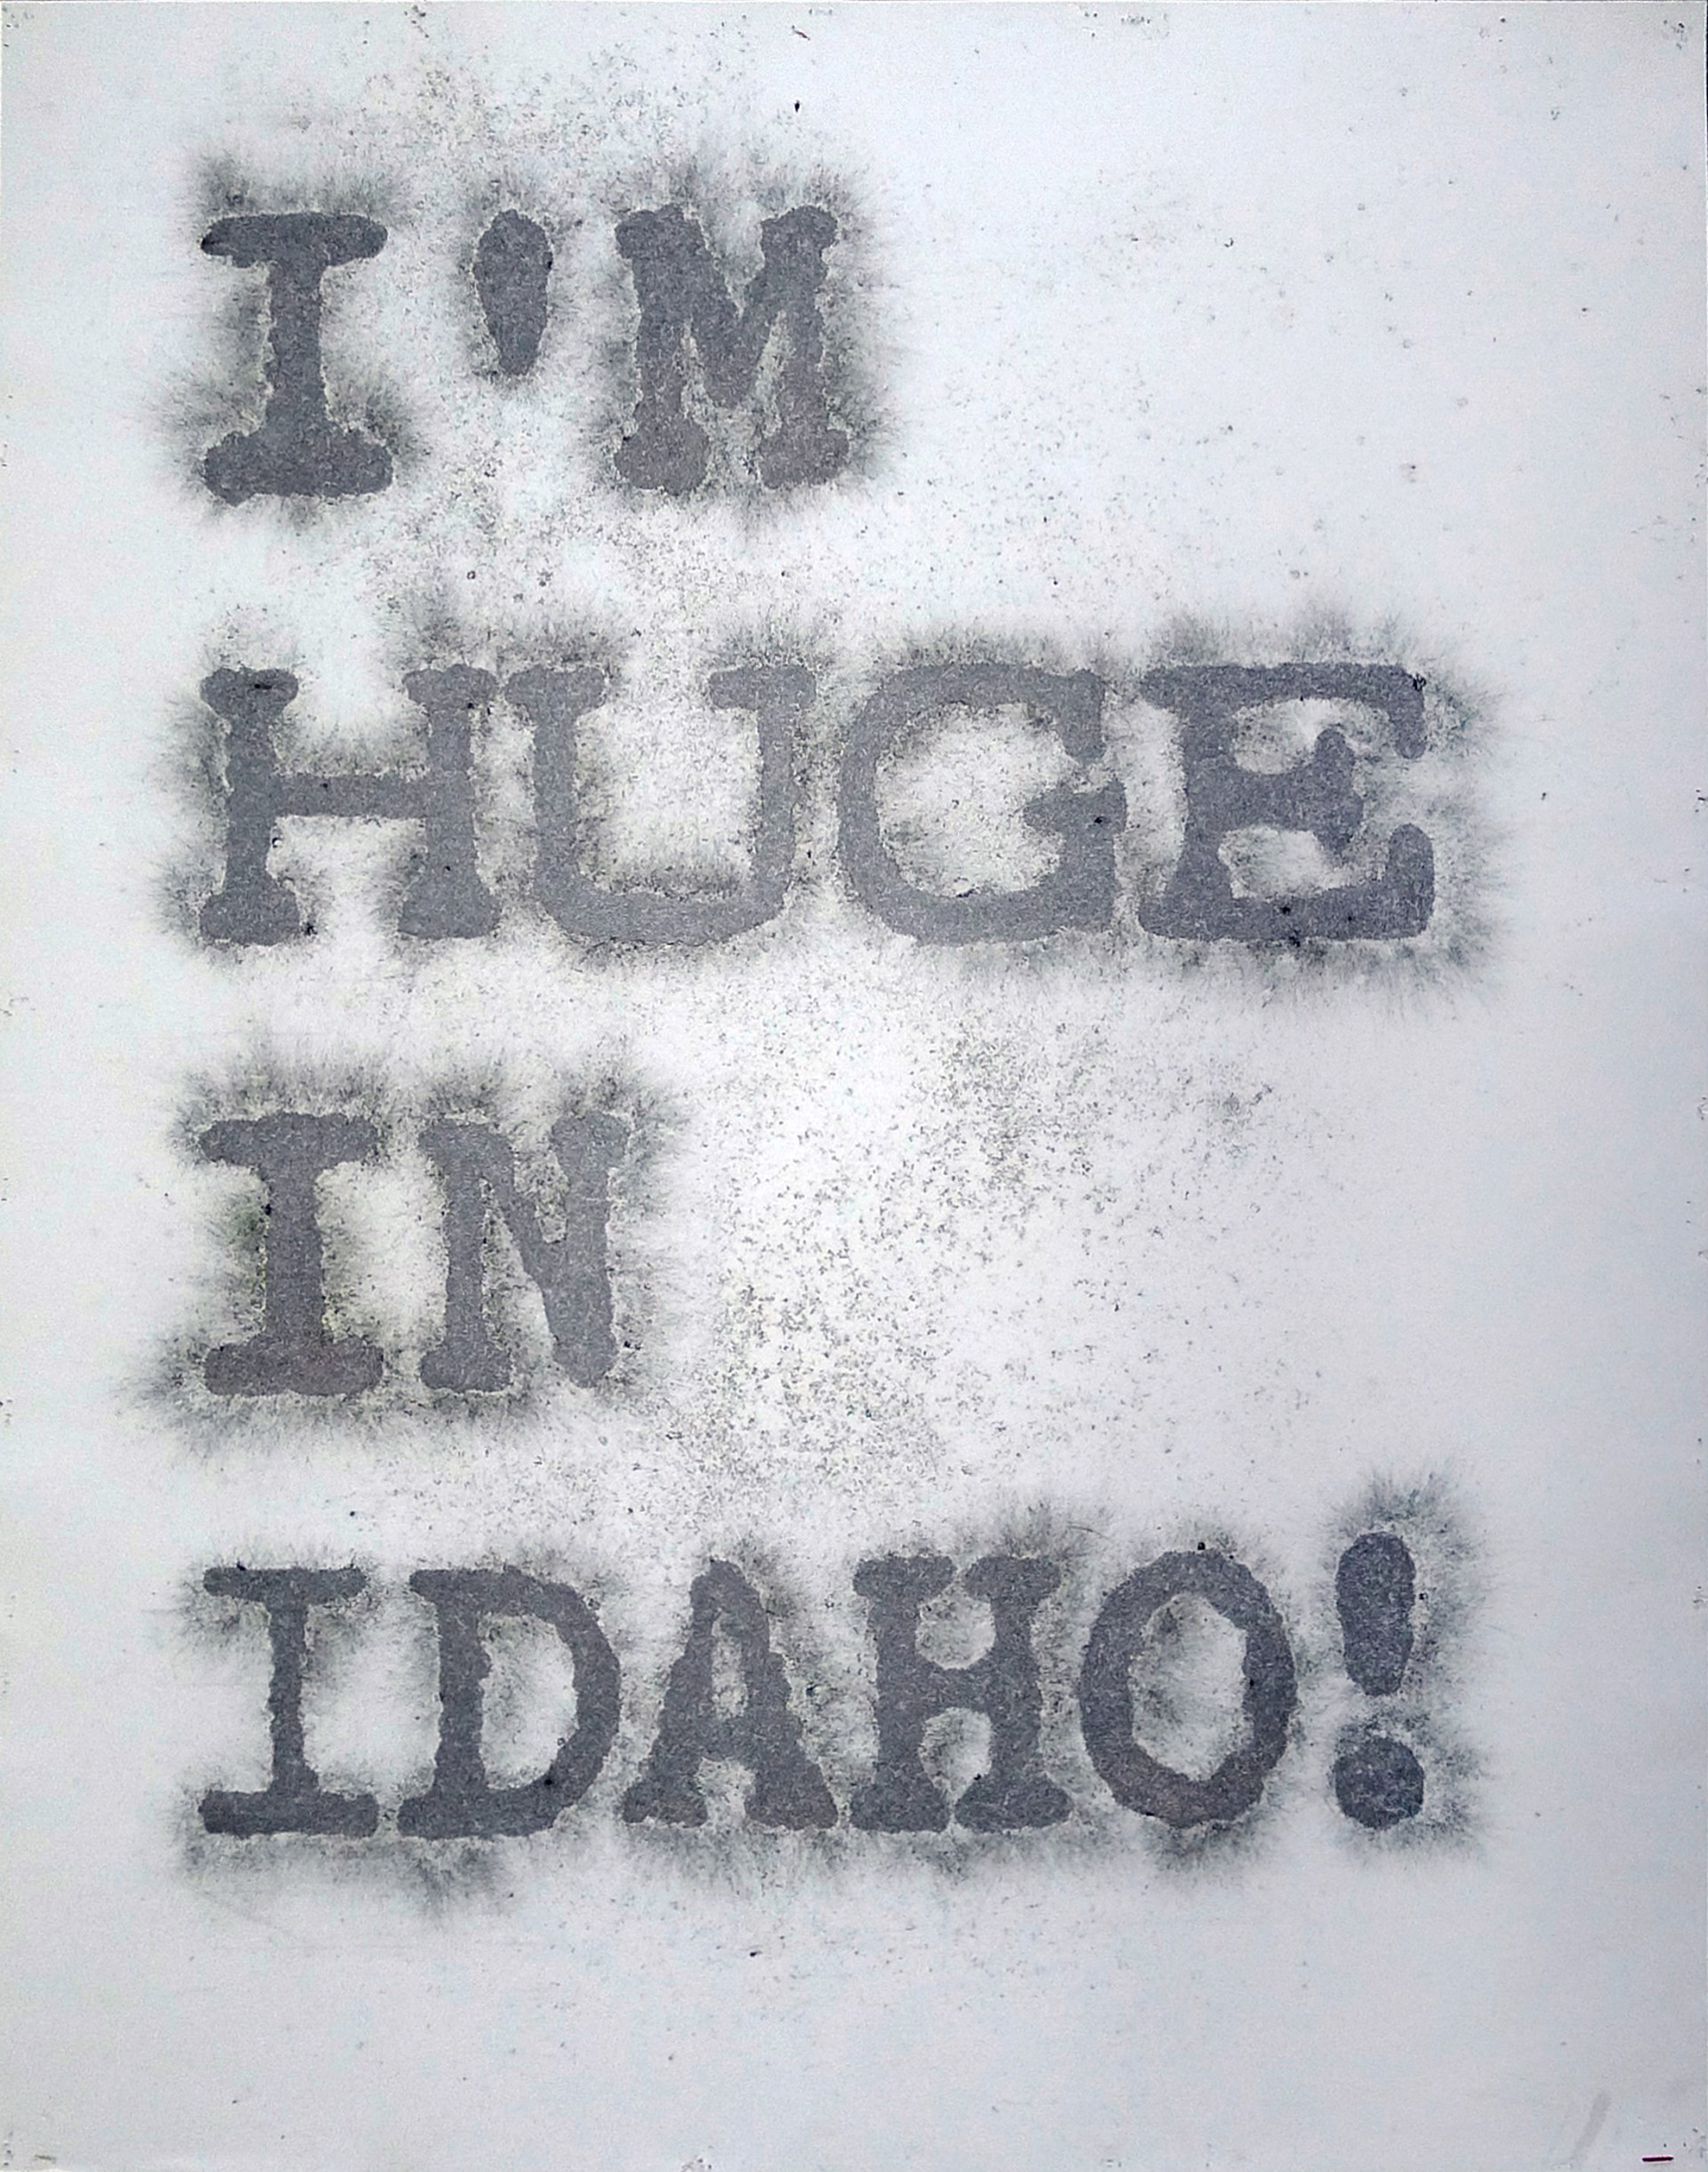 I'm Huge in Idaho by Jonathon Hexner